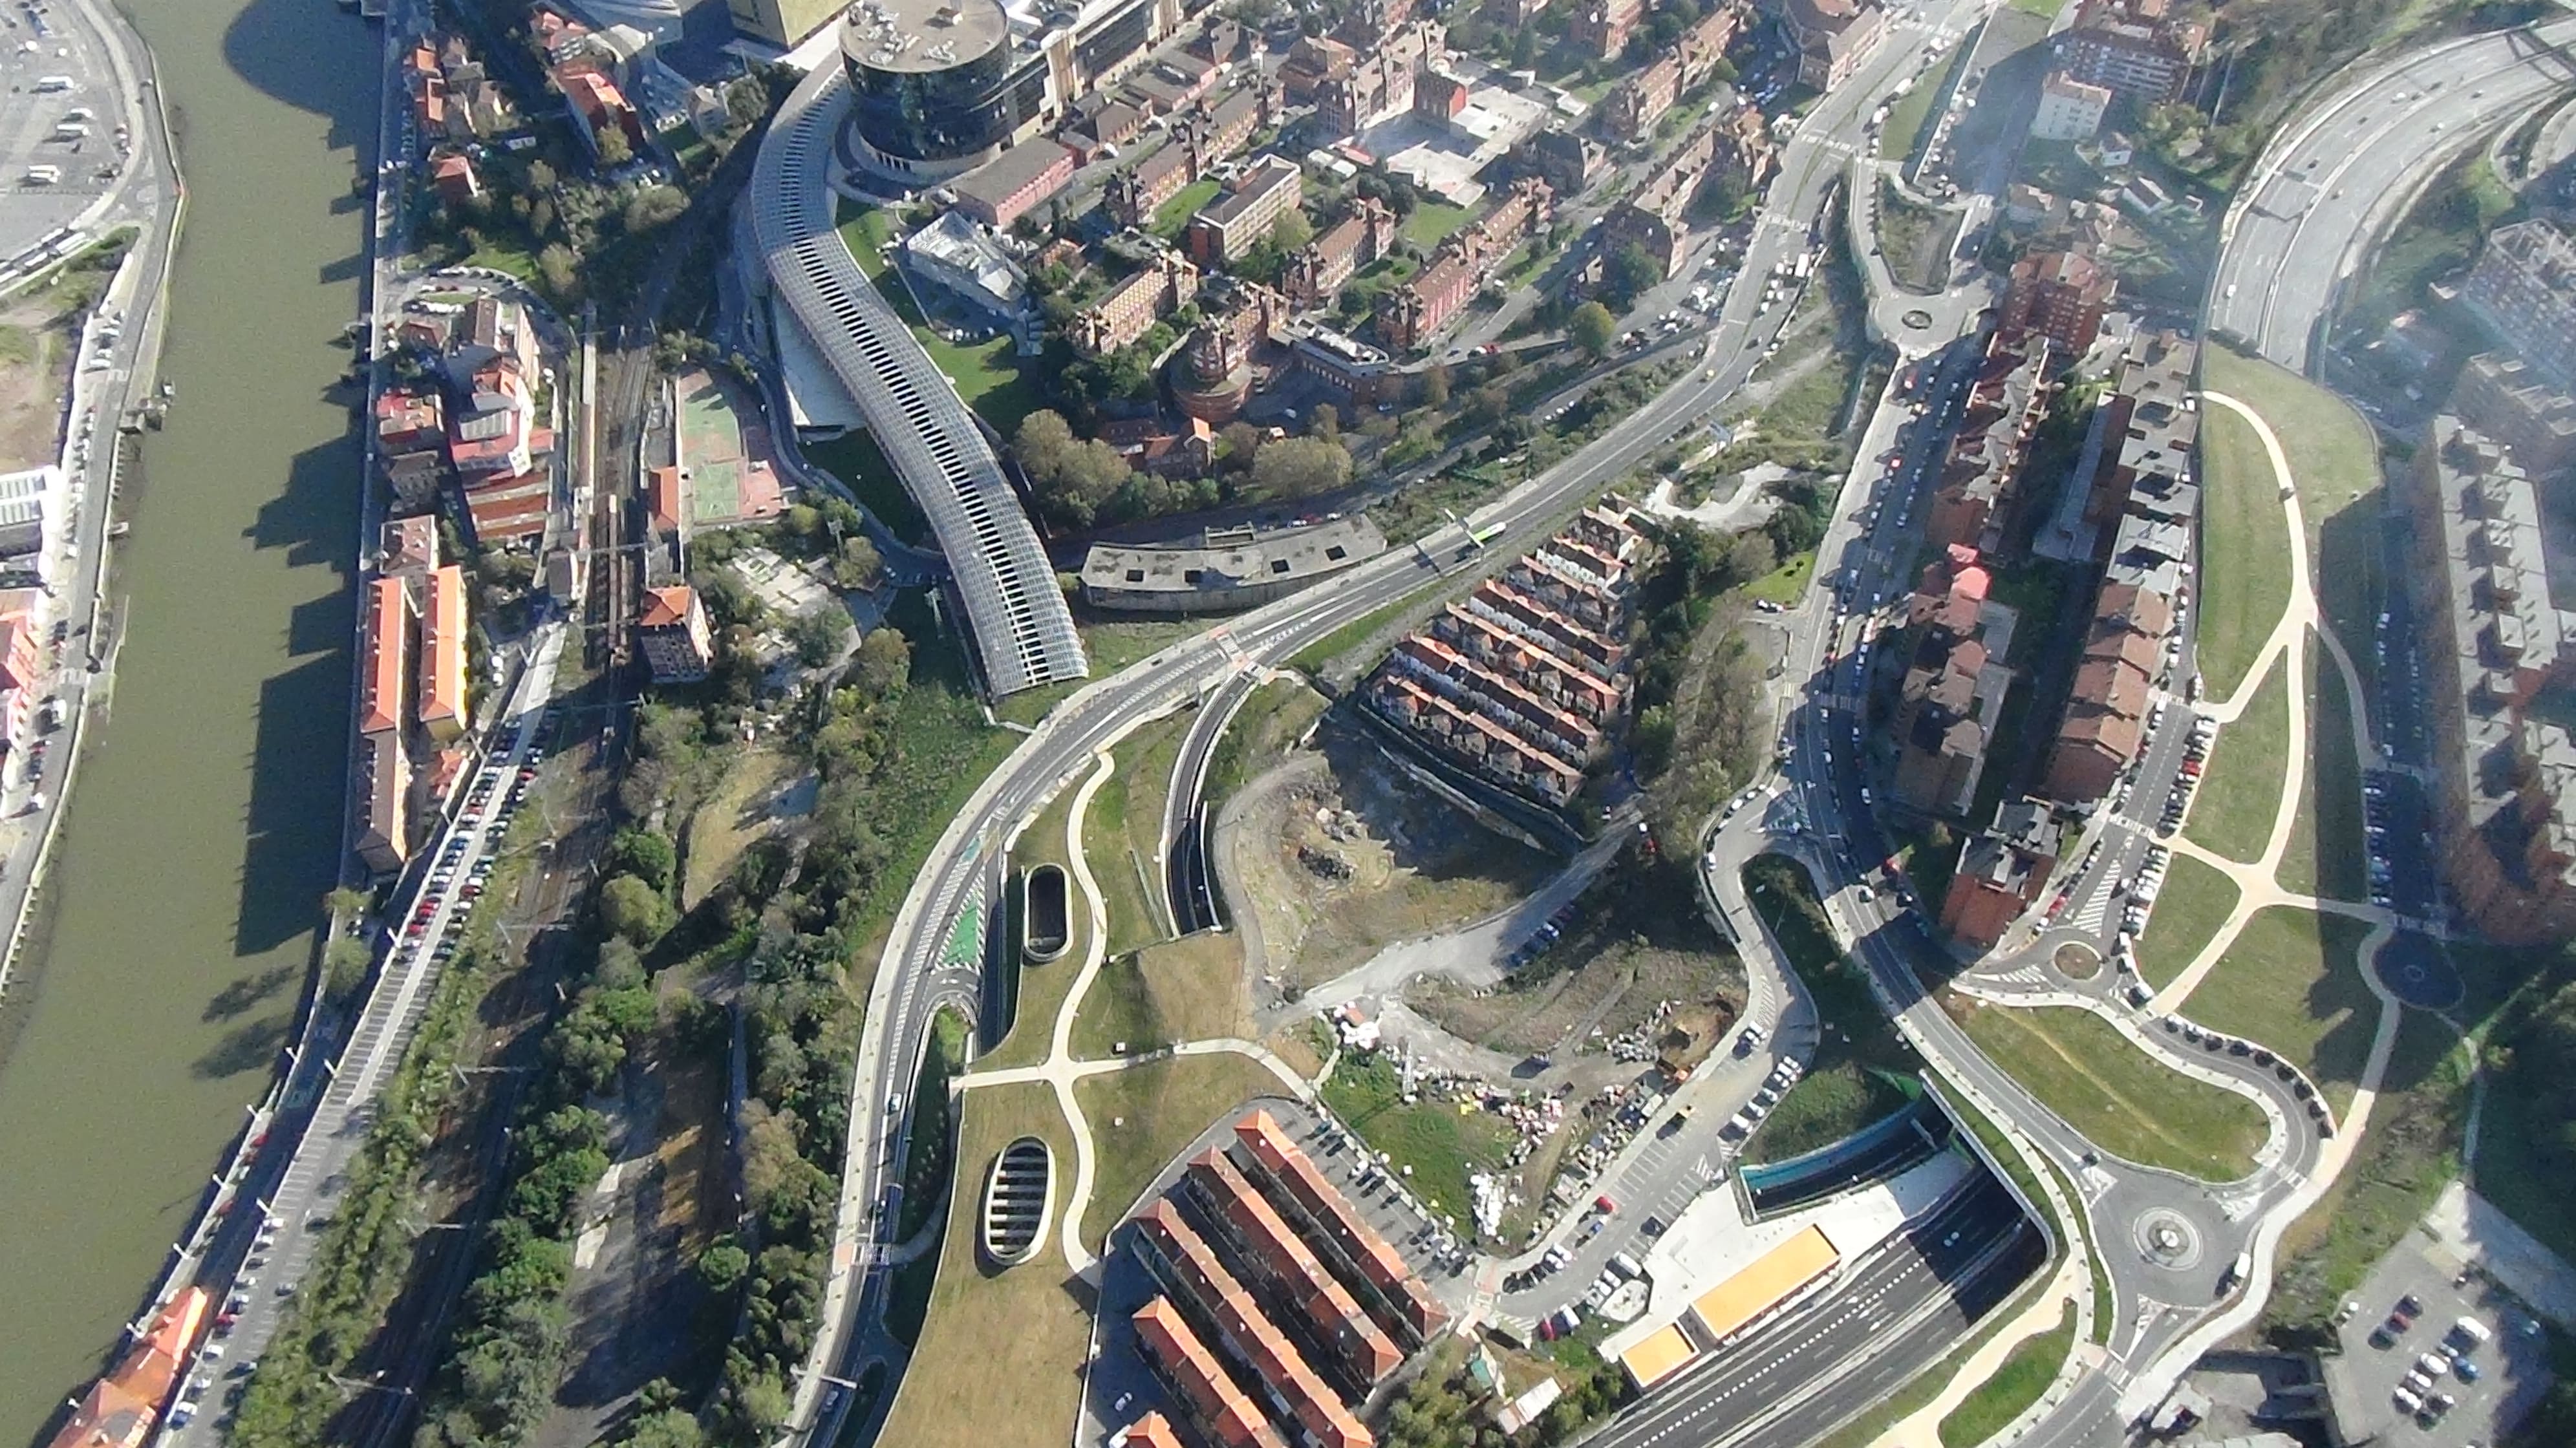 Image 2 of Access to Bilbao via San Mamés